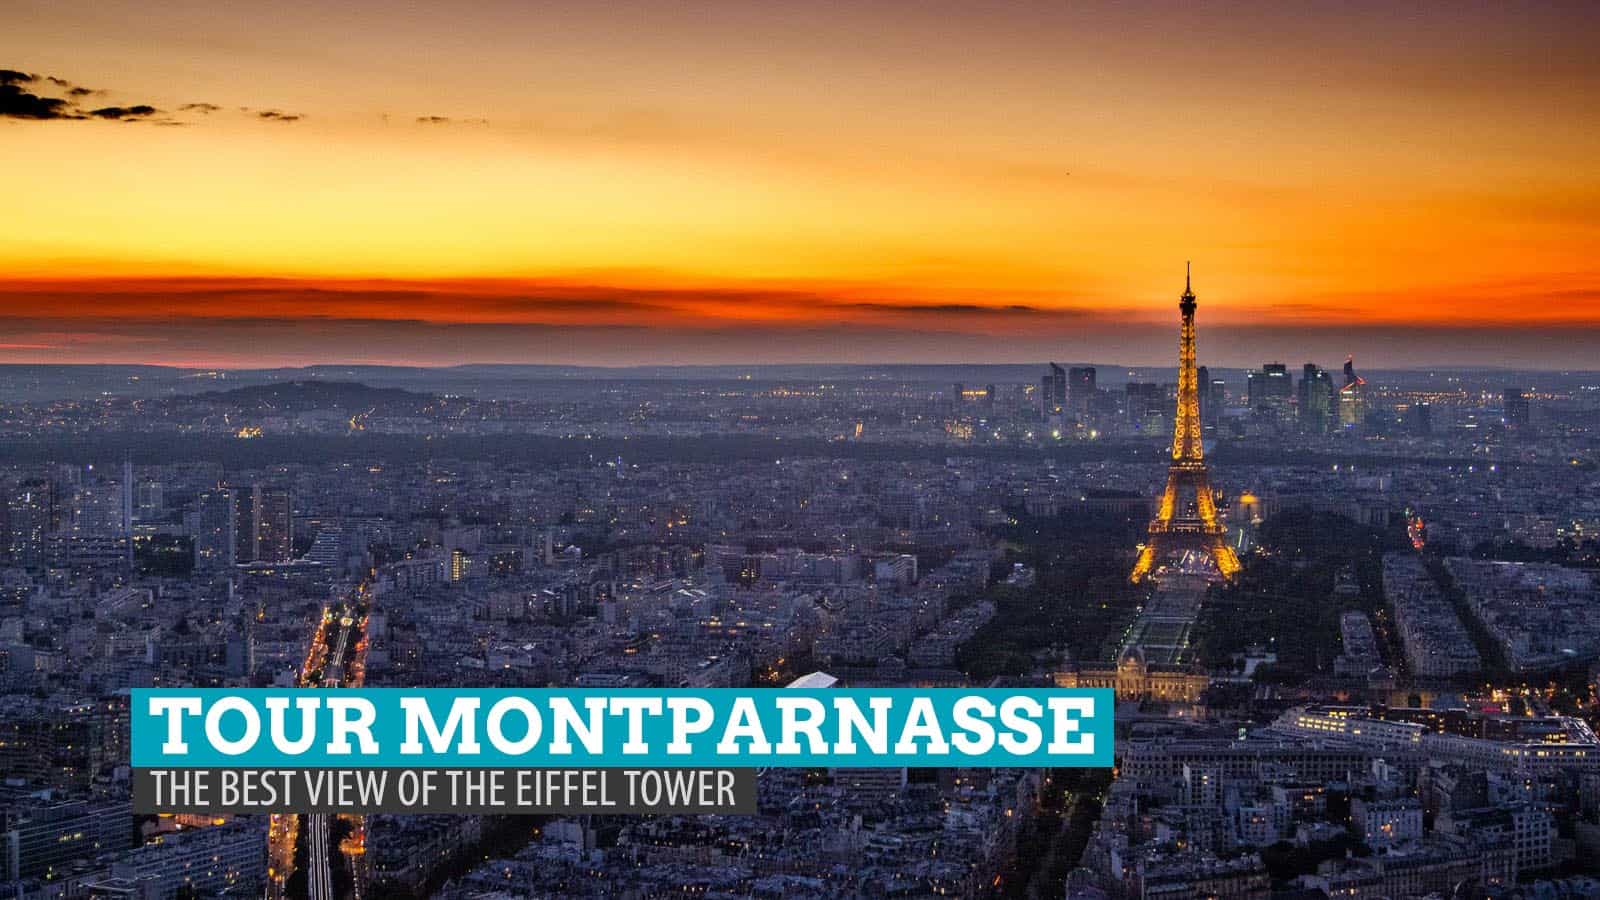 埃菲尔铁塔的最佳景观:游览巴黎蒙帕纳斯